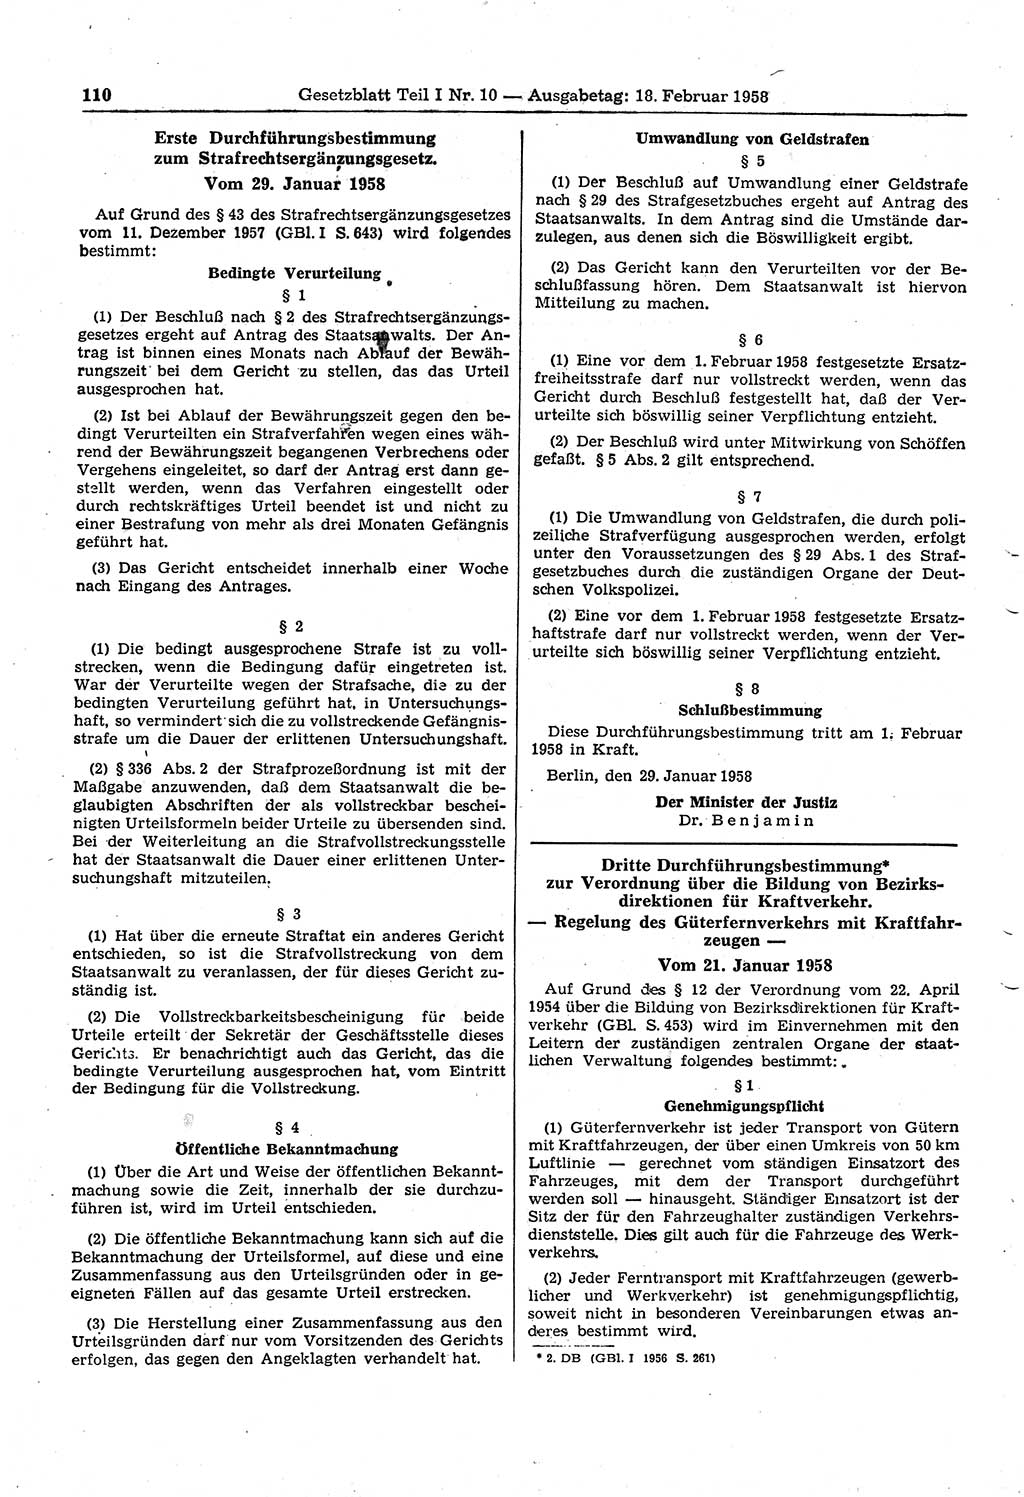 Gesetzblatt (GBl.) der Deutschen Demokratischen Republik (DDR) Teil Ⅰ 1958, Seite 110 (GBl. DDR Ⅰ 1958, S. 110)